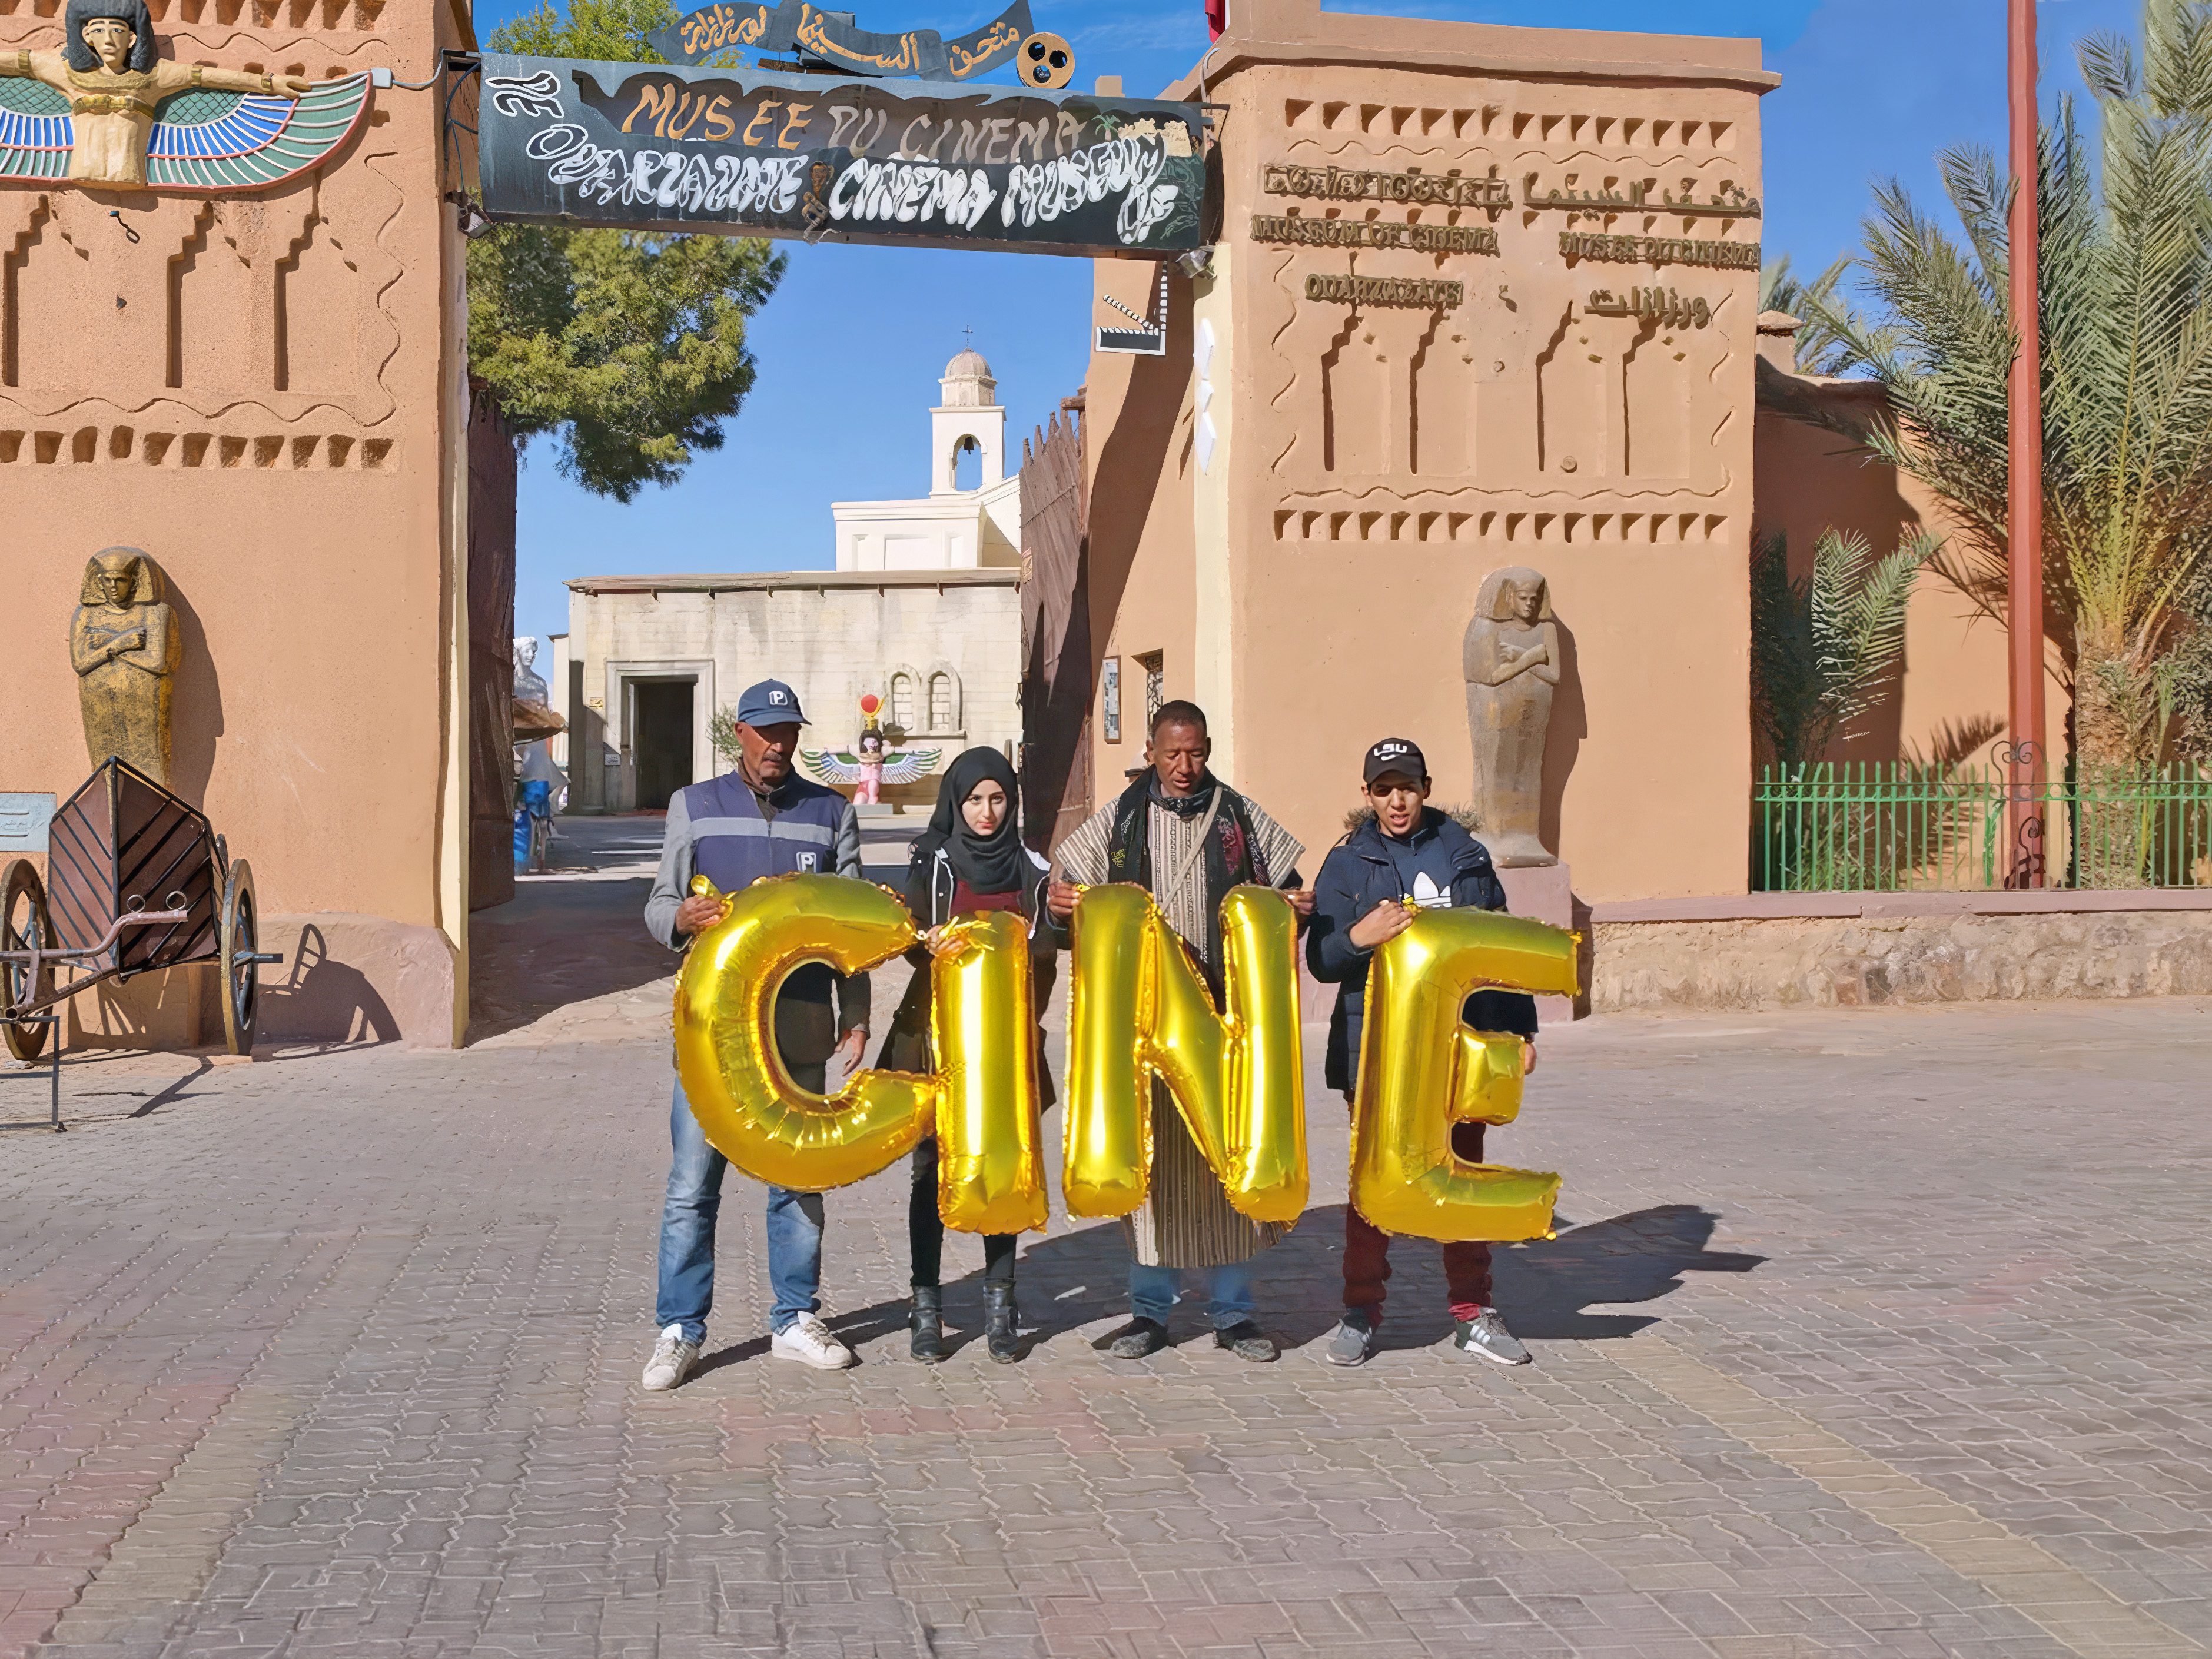 Morocco, Ouarzazate, Musée du Cinema - Cine, Silence was Golden, gold balloons